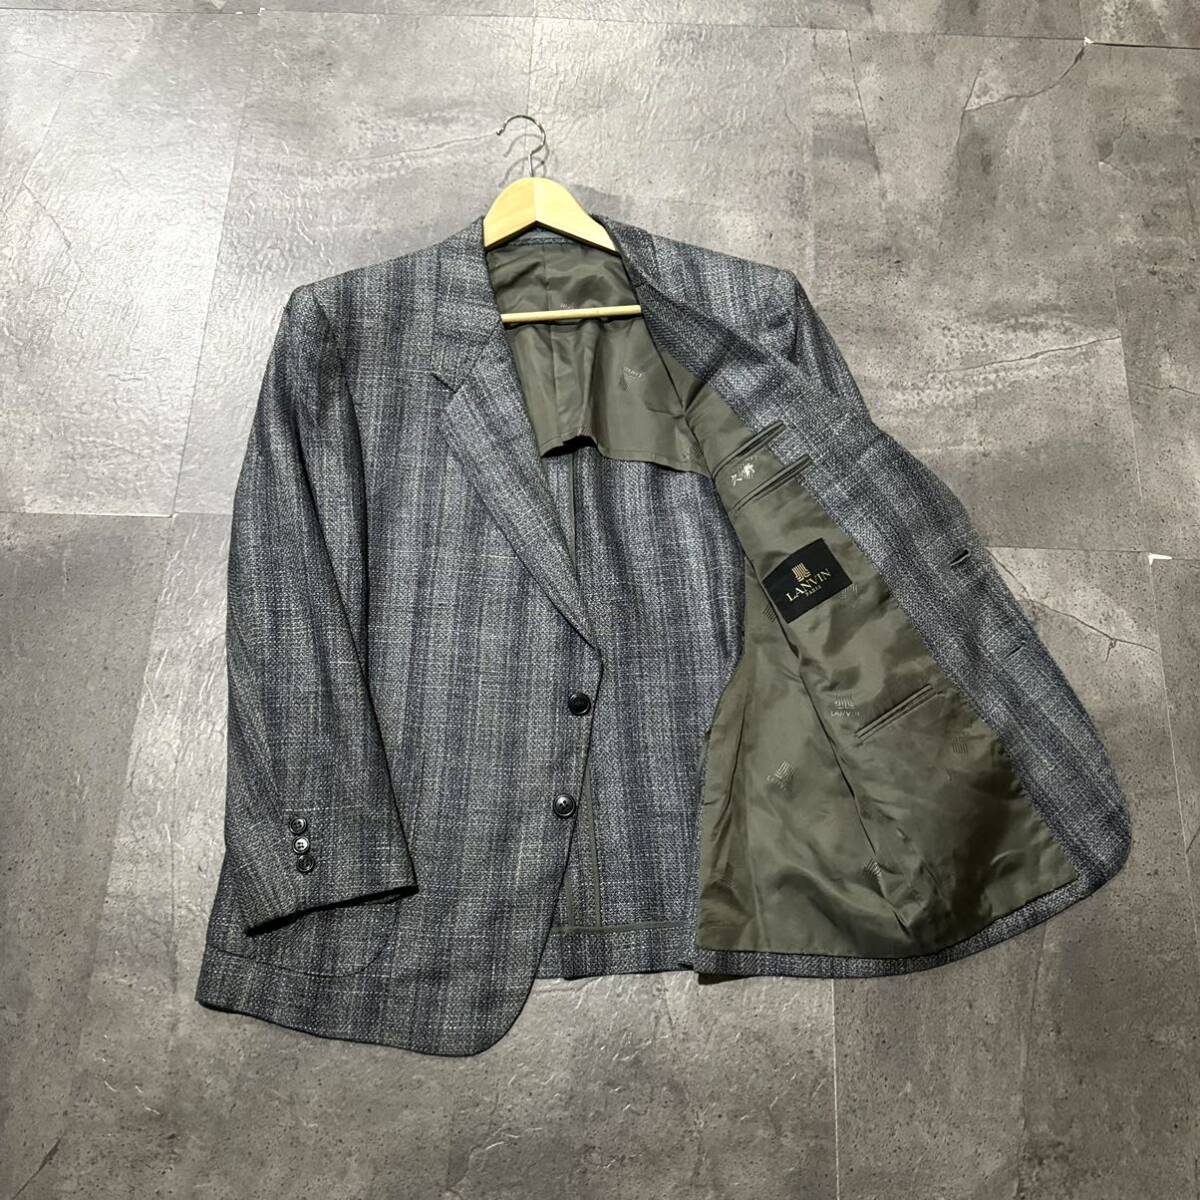 F☆ 高級ラグジュアリー服 '上質シルク100%使用' LANVIN ランバン 格子柄 ツイード生地 テーラードジャケット sizeST48-55 アウター 紳士服の画像1